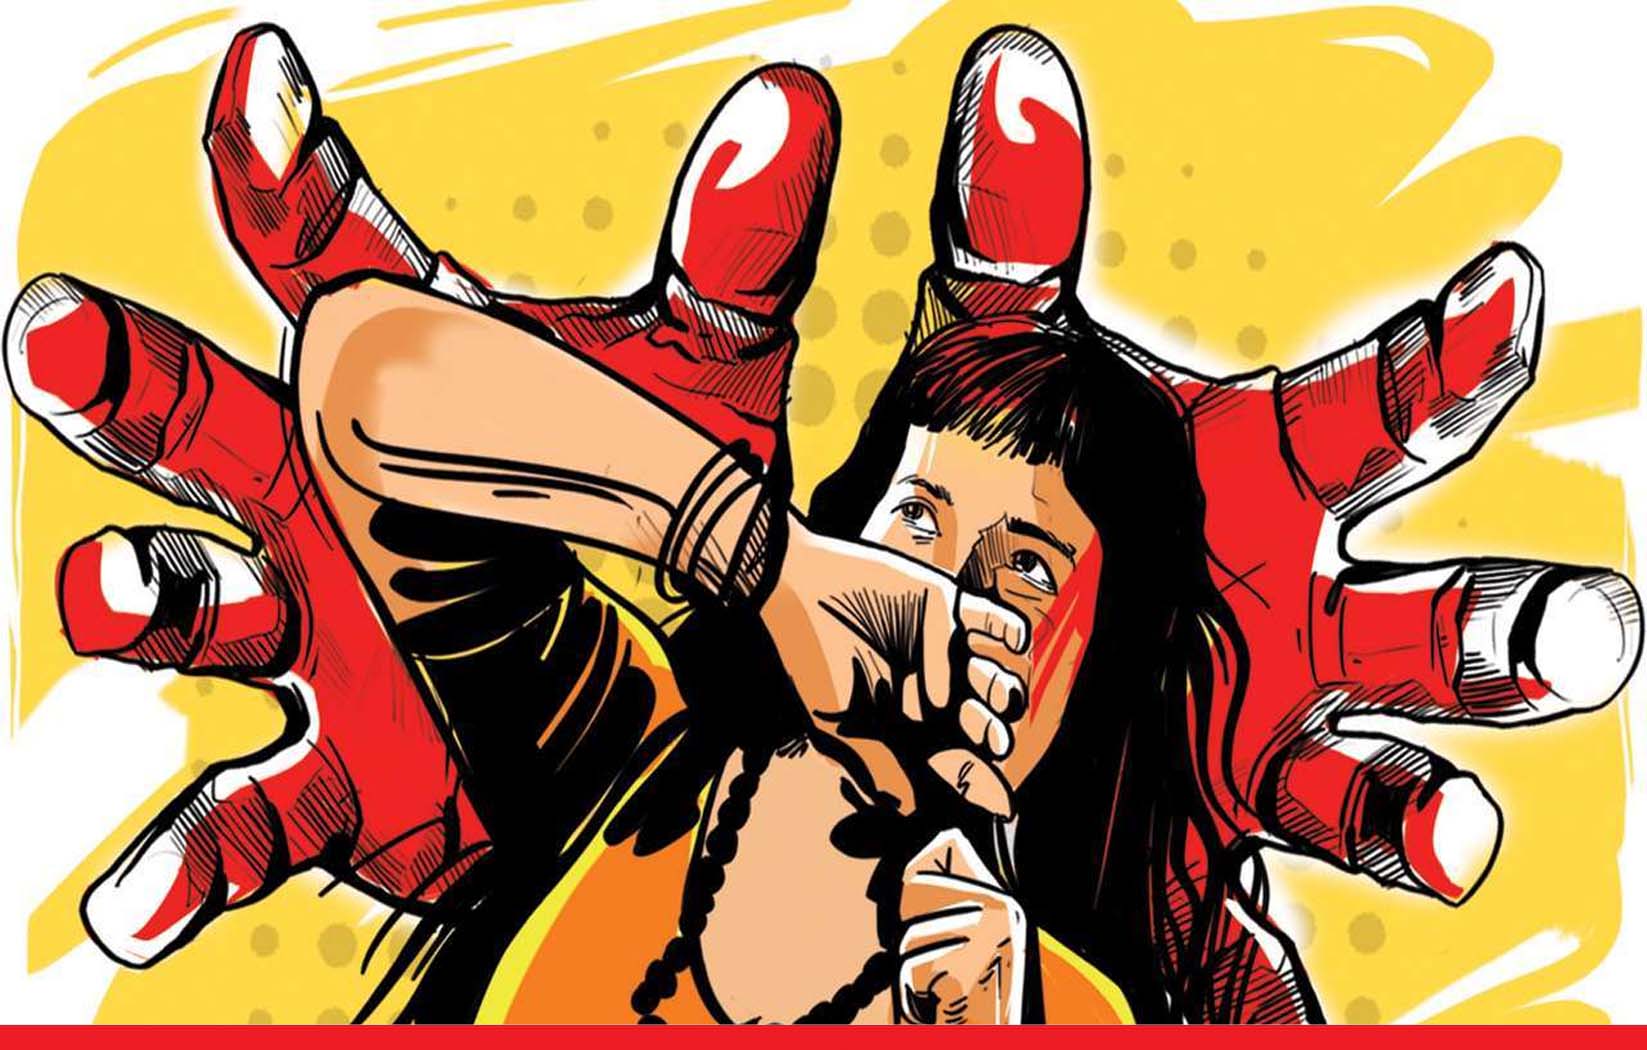 बिहार की महिला डॉक्टर से तमिलनाडु में गैंगरेप, पुलिस ने पांच आरोपियों को किया गिरफ्तार